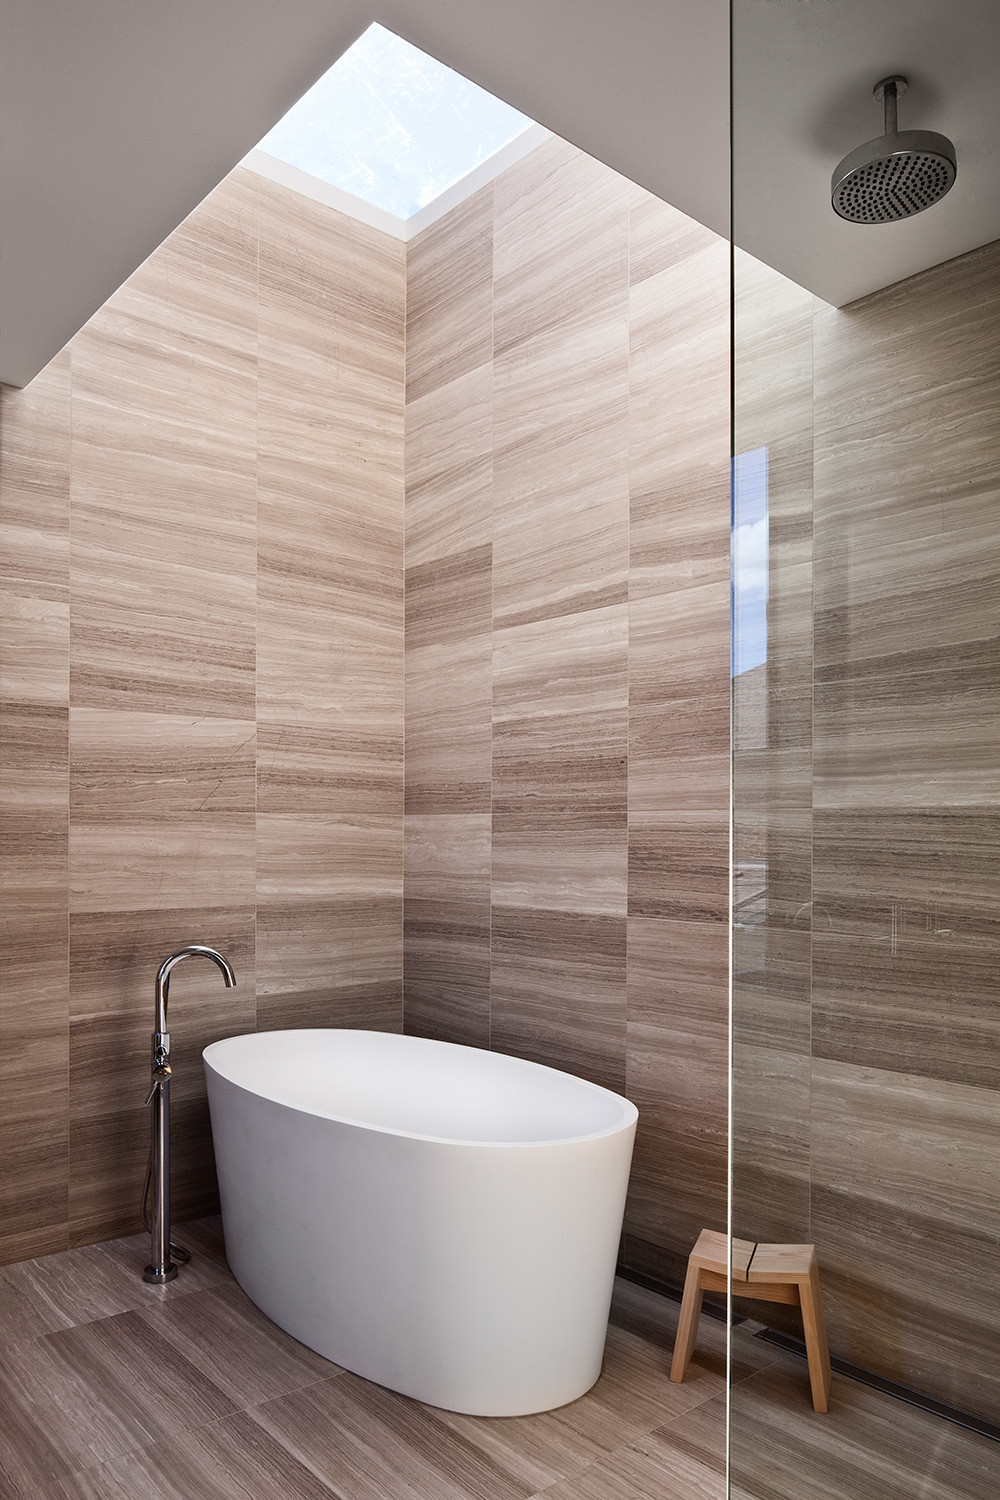 Bathroom Tile Decor
 Bathroom Design Ideas Use the Same Tile the Floors and